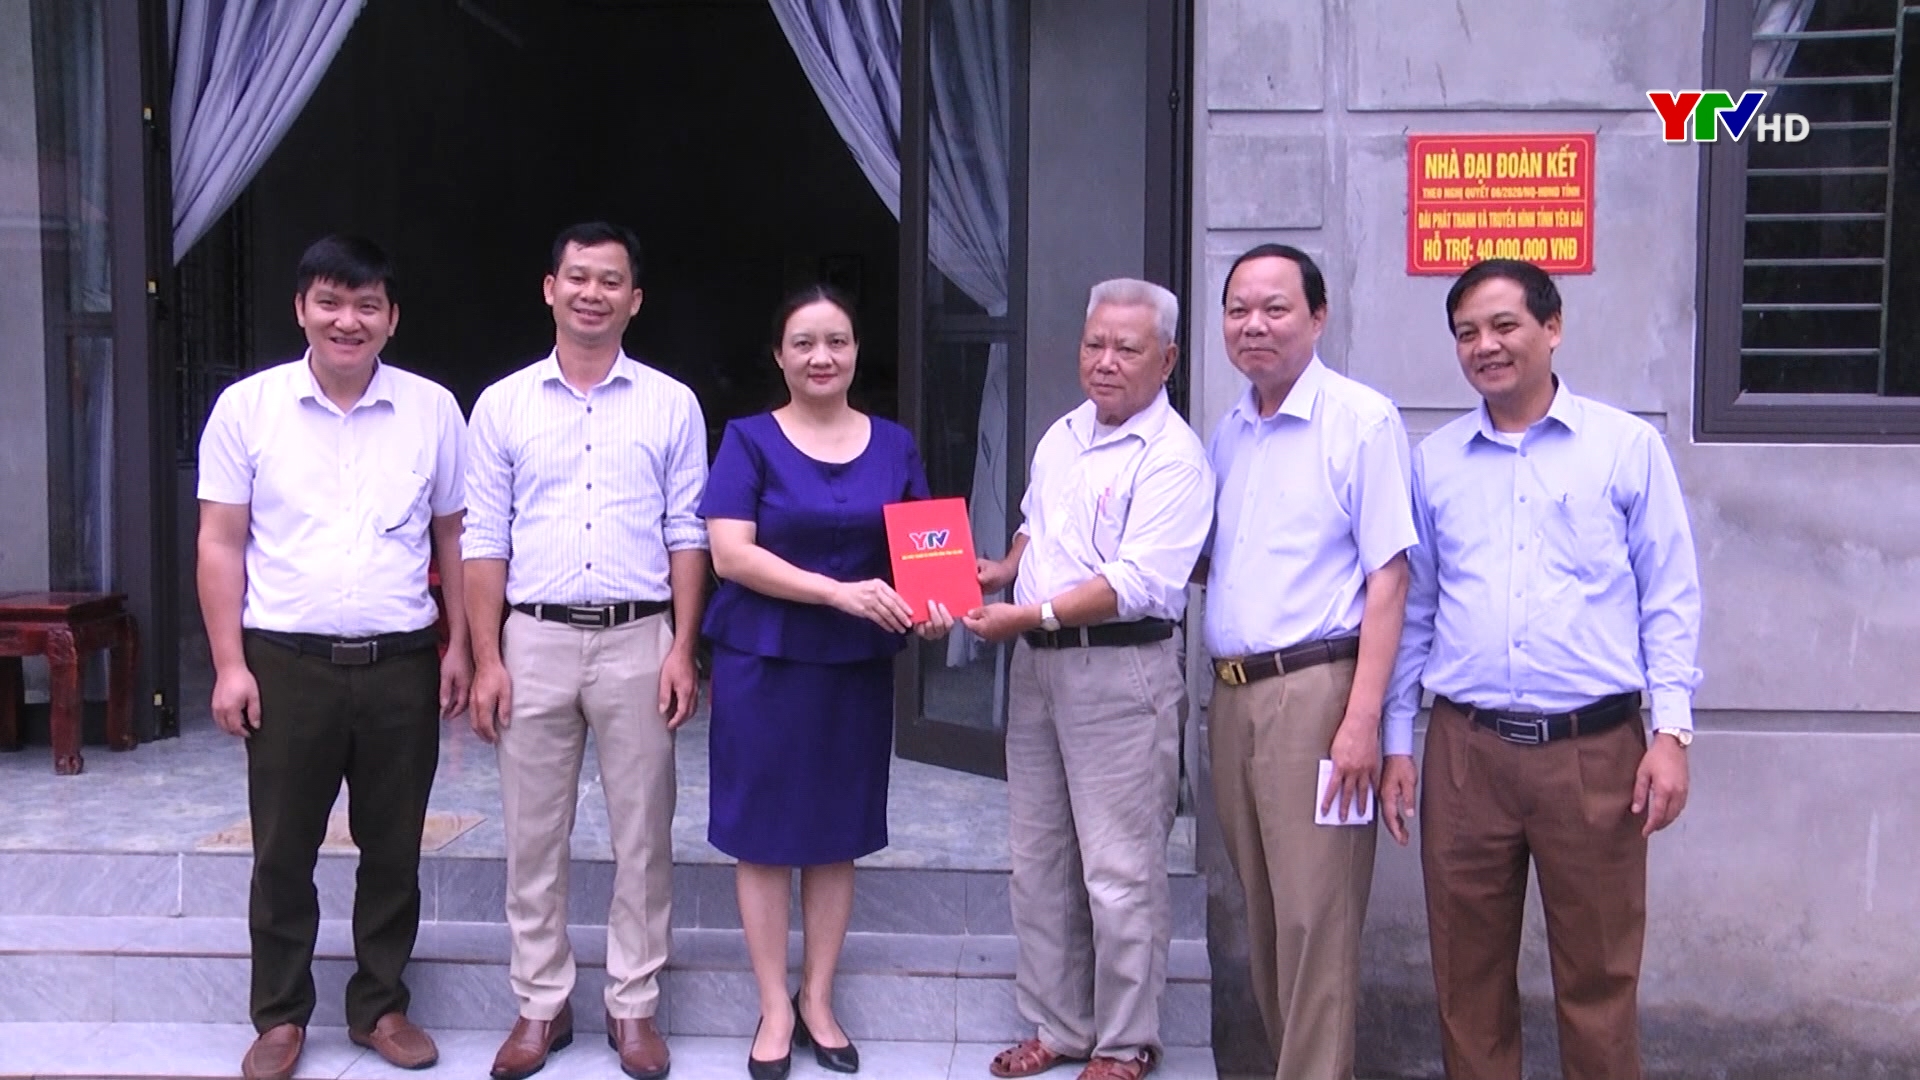 Đài Phát thanh và Truyền hình Yên Bái trao nhà đại đoàn kết cho hộ nghèo xã Bảo Ái, huyện Yên Bình